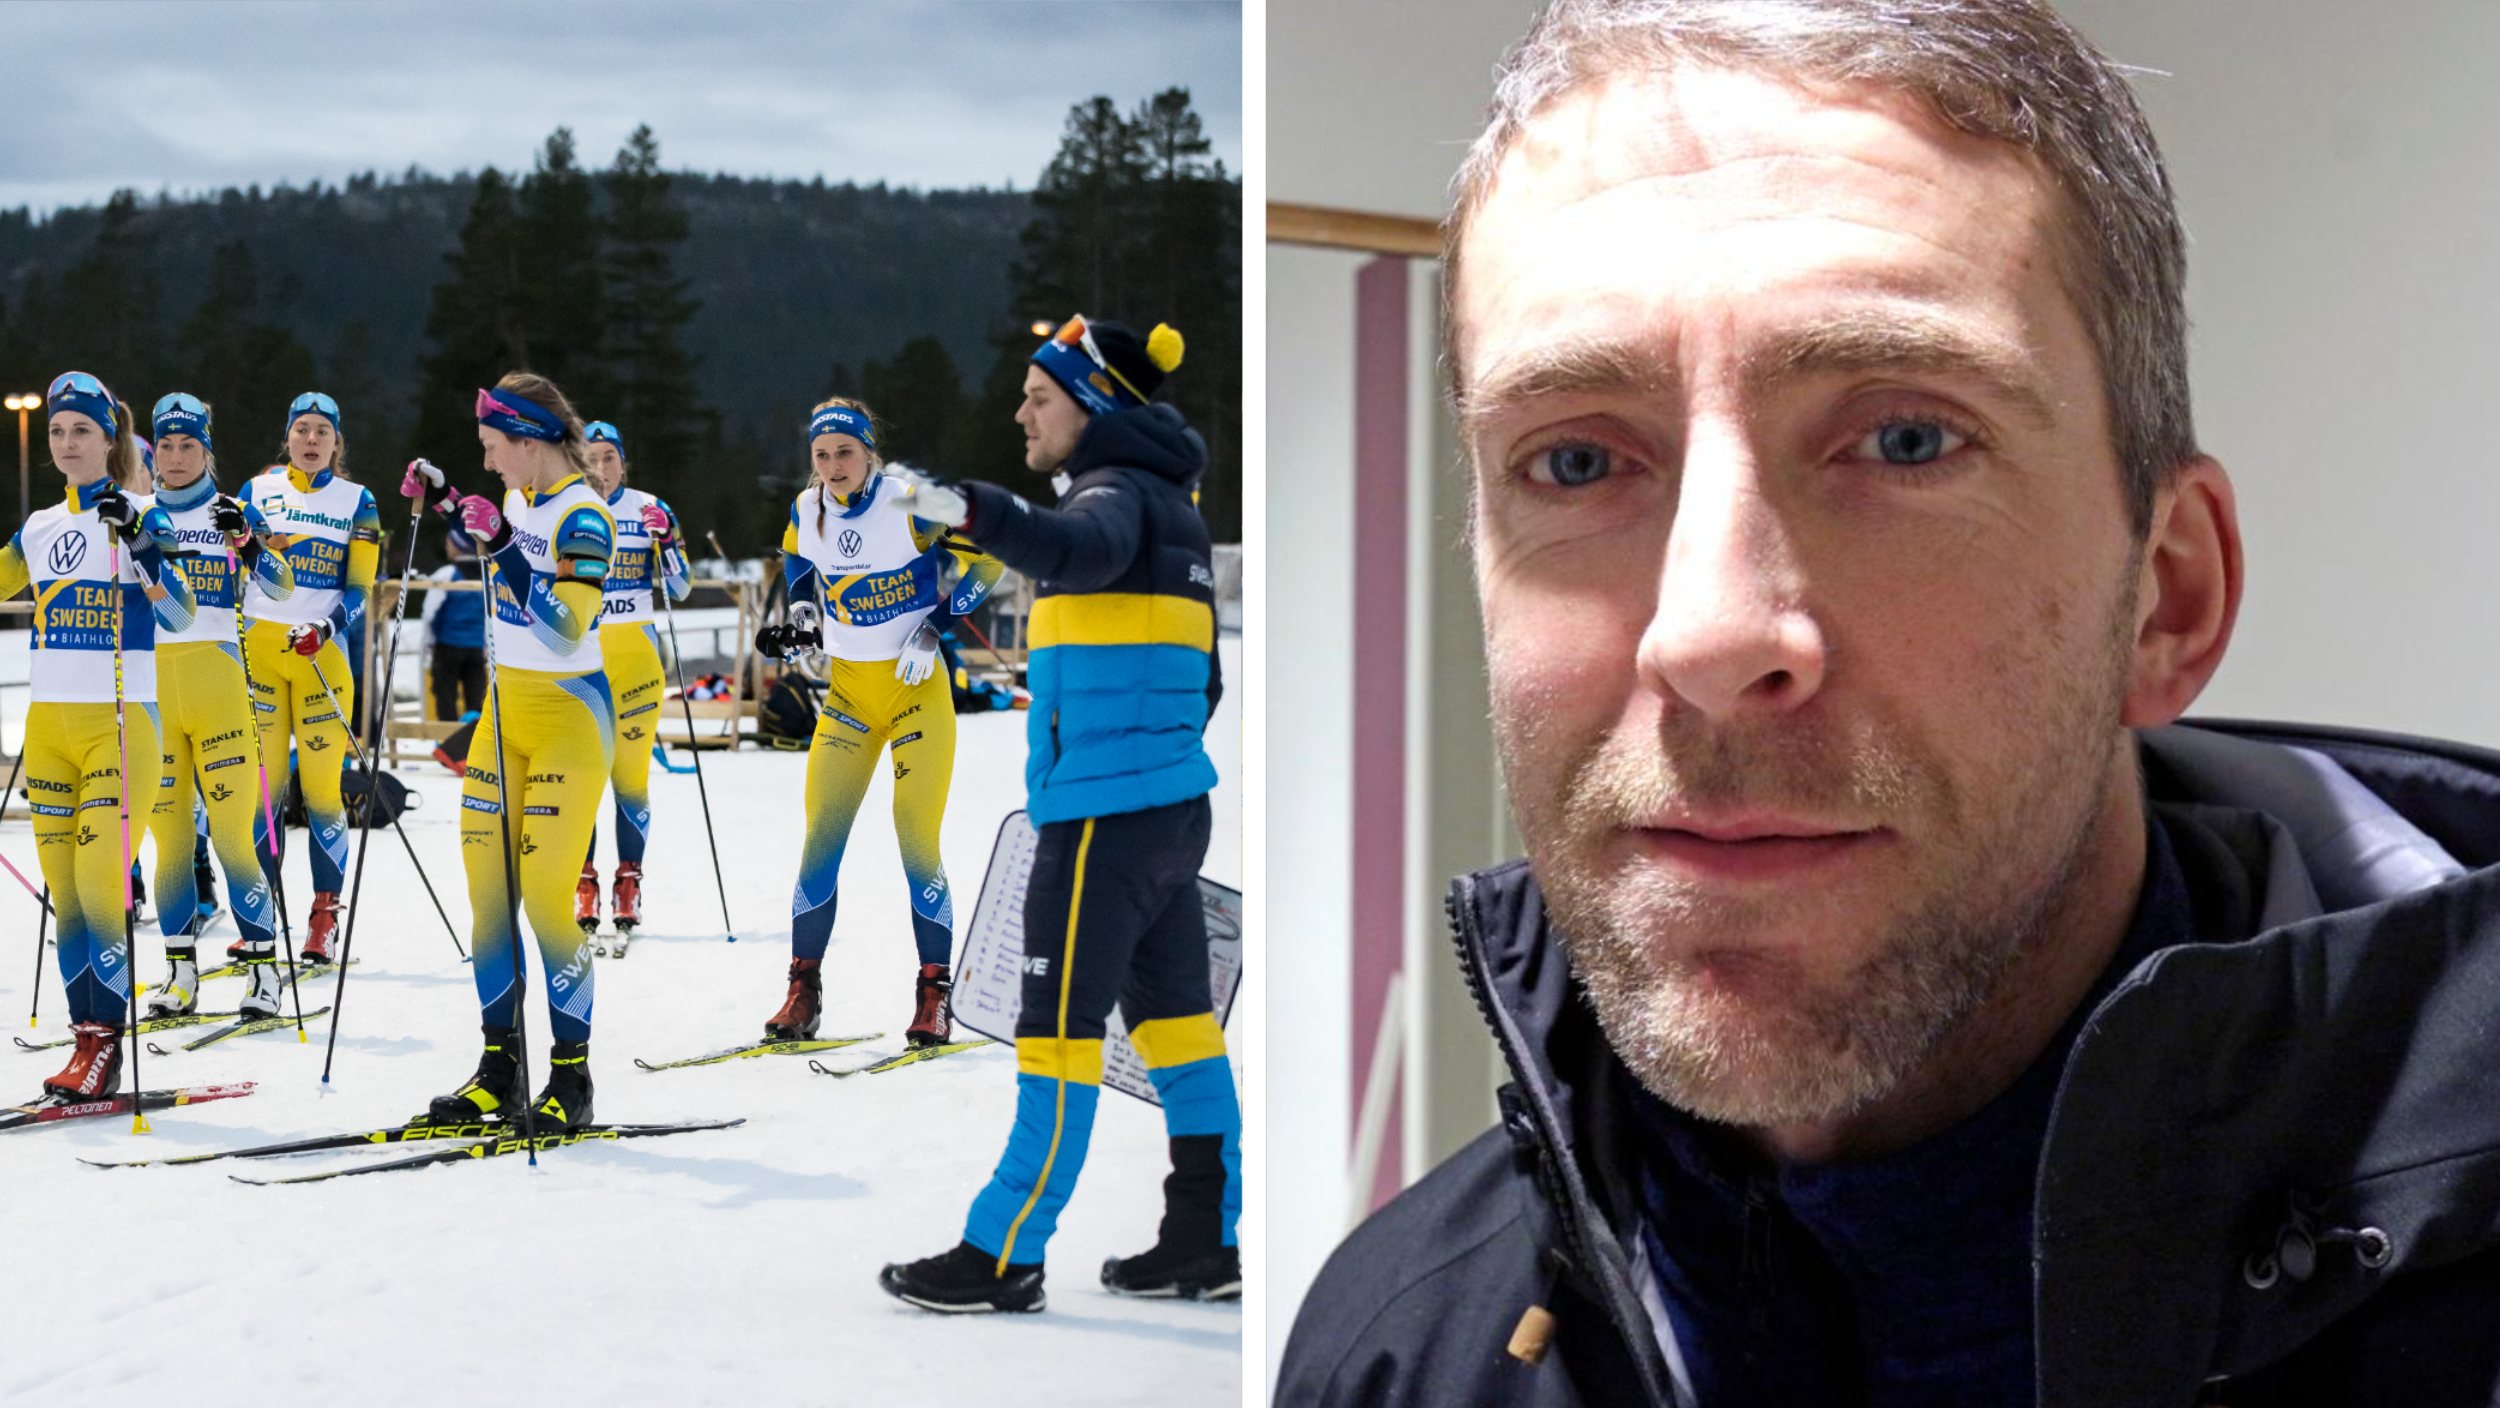 Casi Covid nella squadra di biathlon: “Un po’ più prudente” – Östersunds Posten